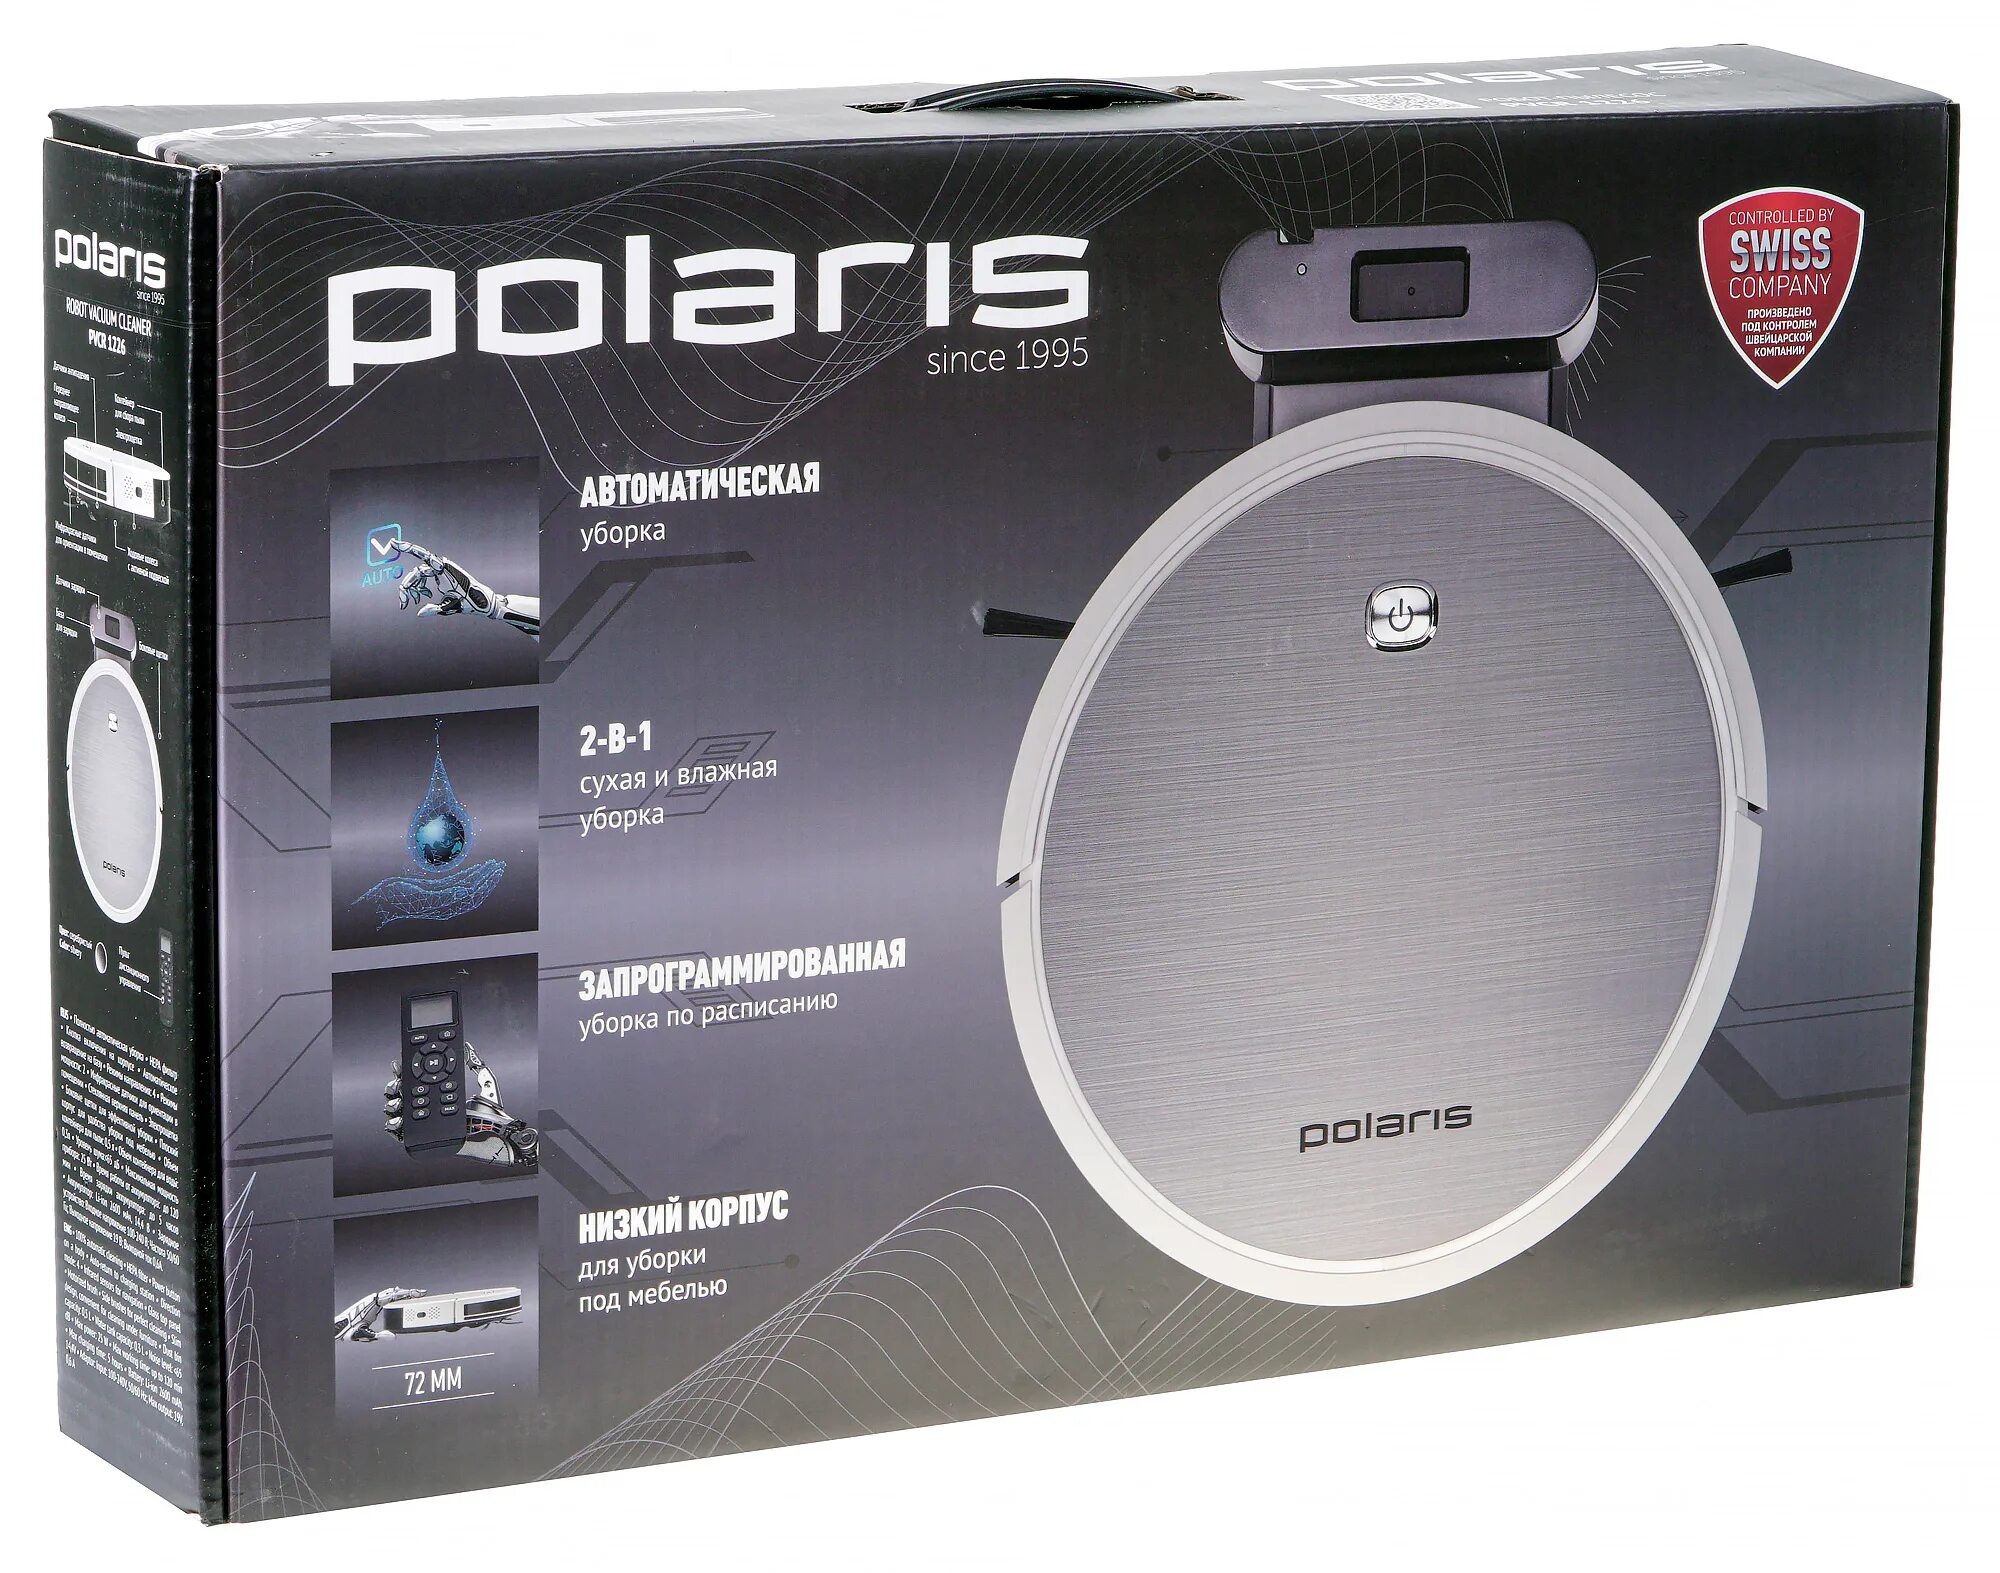 Polaris PVCR 1226. Polaris 1226 робот-пылесос. Polaris робот-пылесос Polaris PVCR 1226. Робот-пылесос Polaris PVCR 1226 коробка.